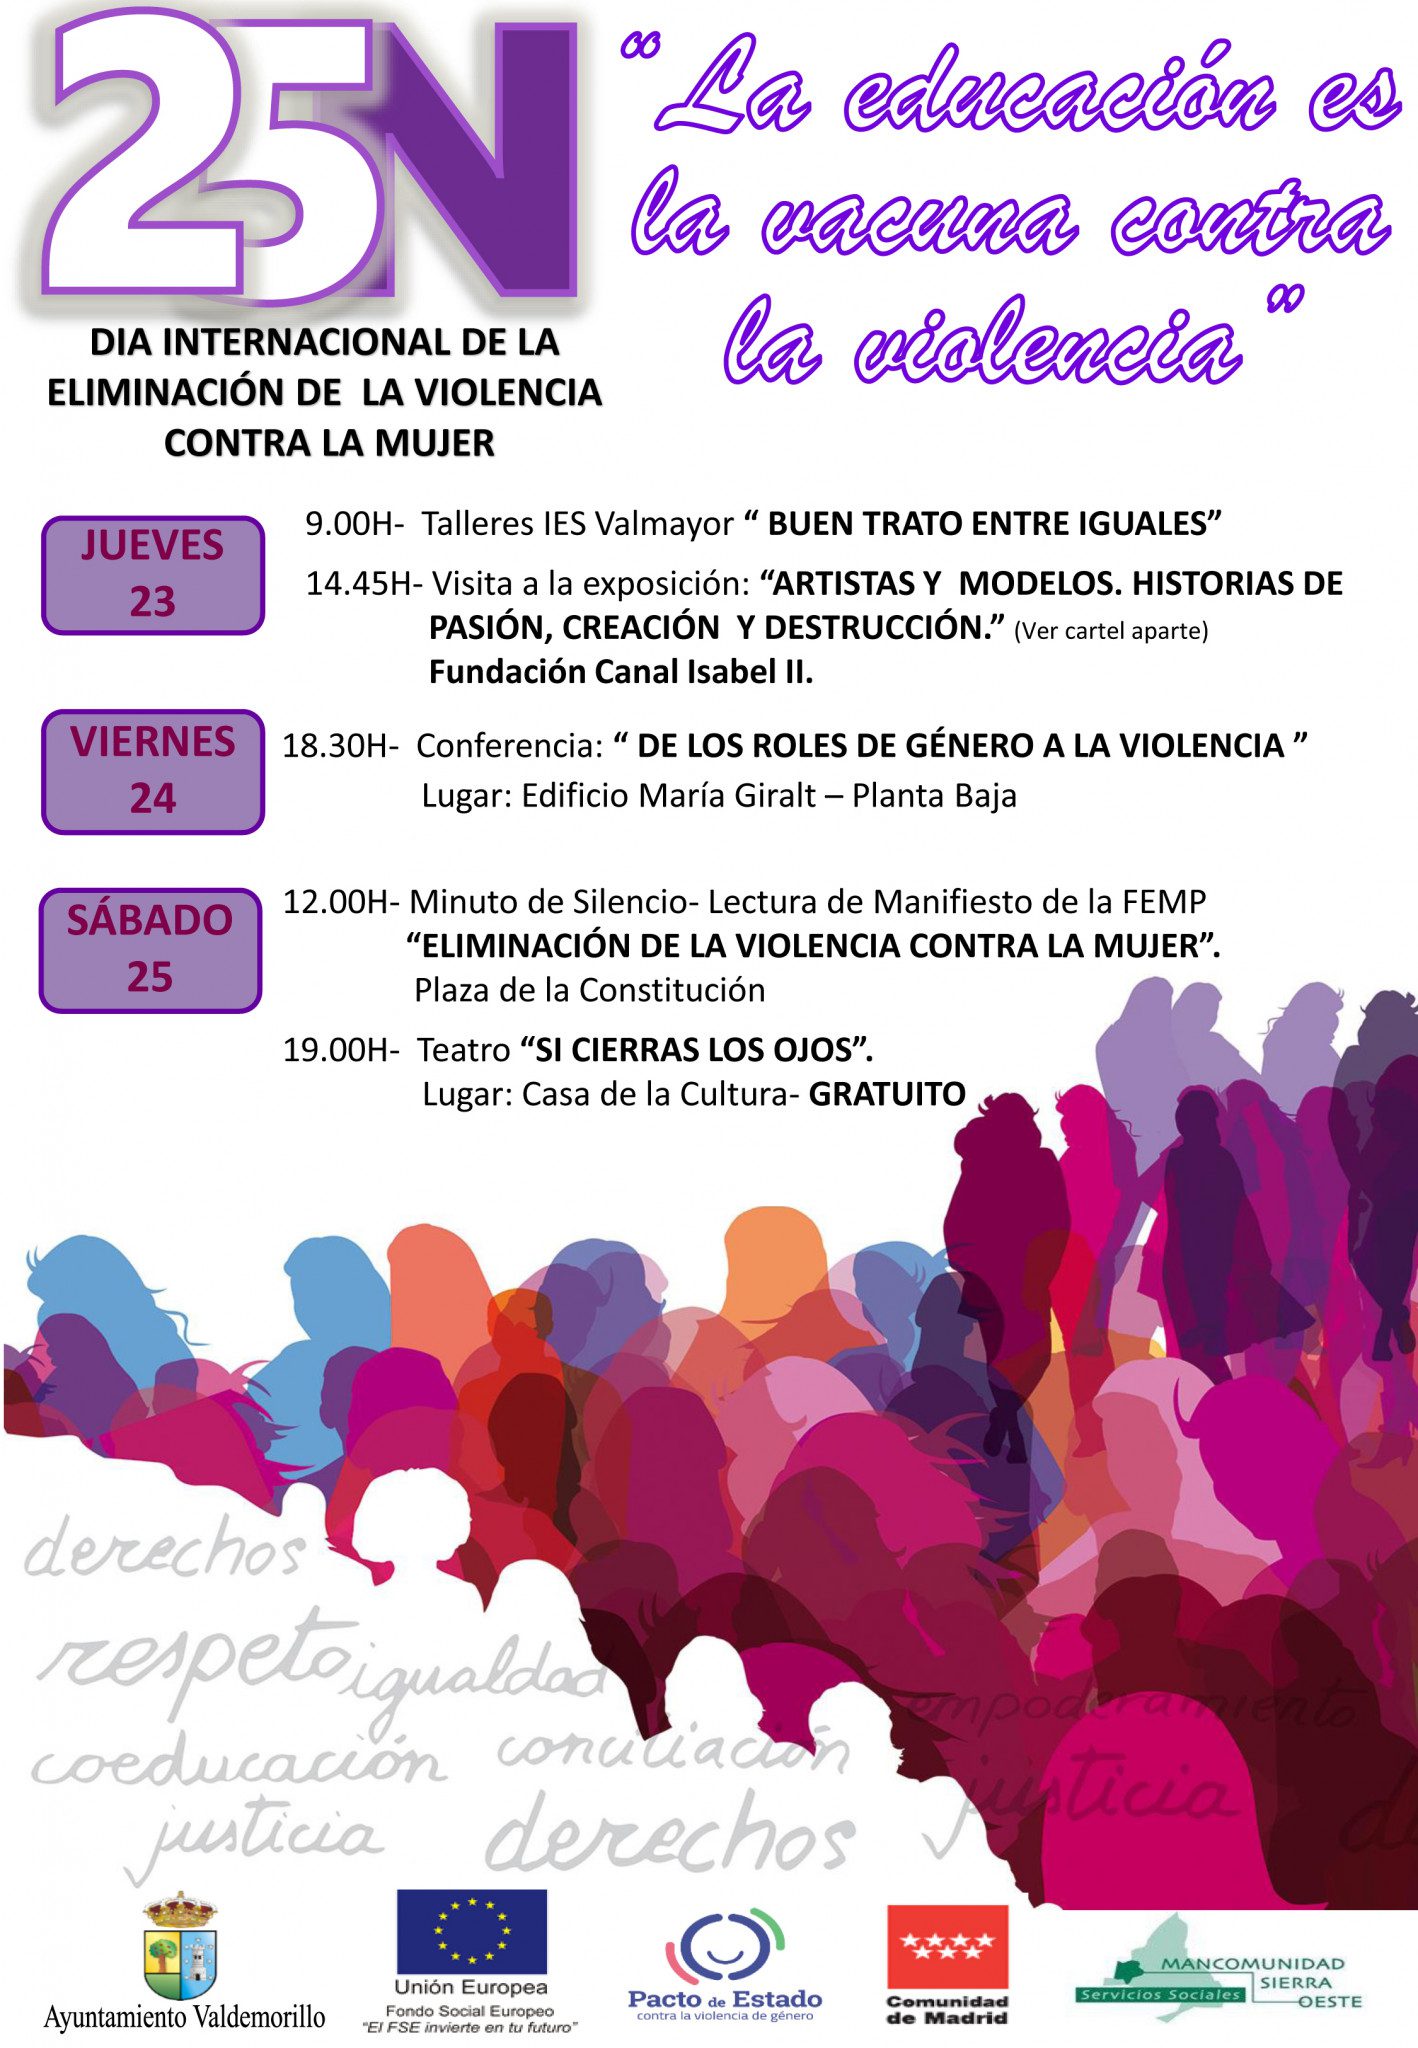 Cartel con el programa de "La educación es la vacuna contra la violencia" en Valdemorillo